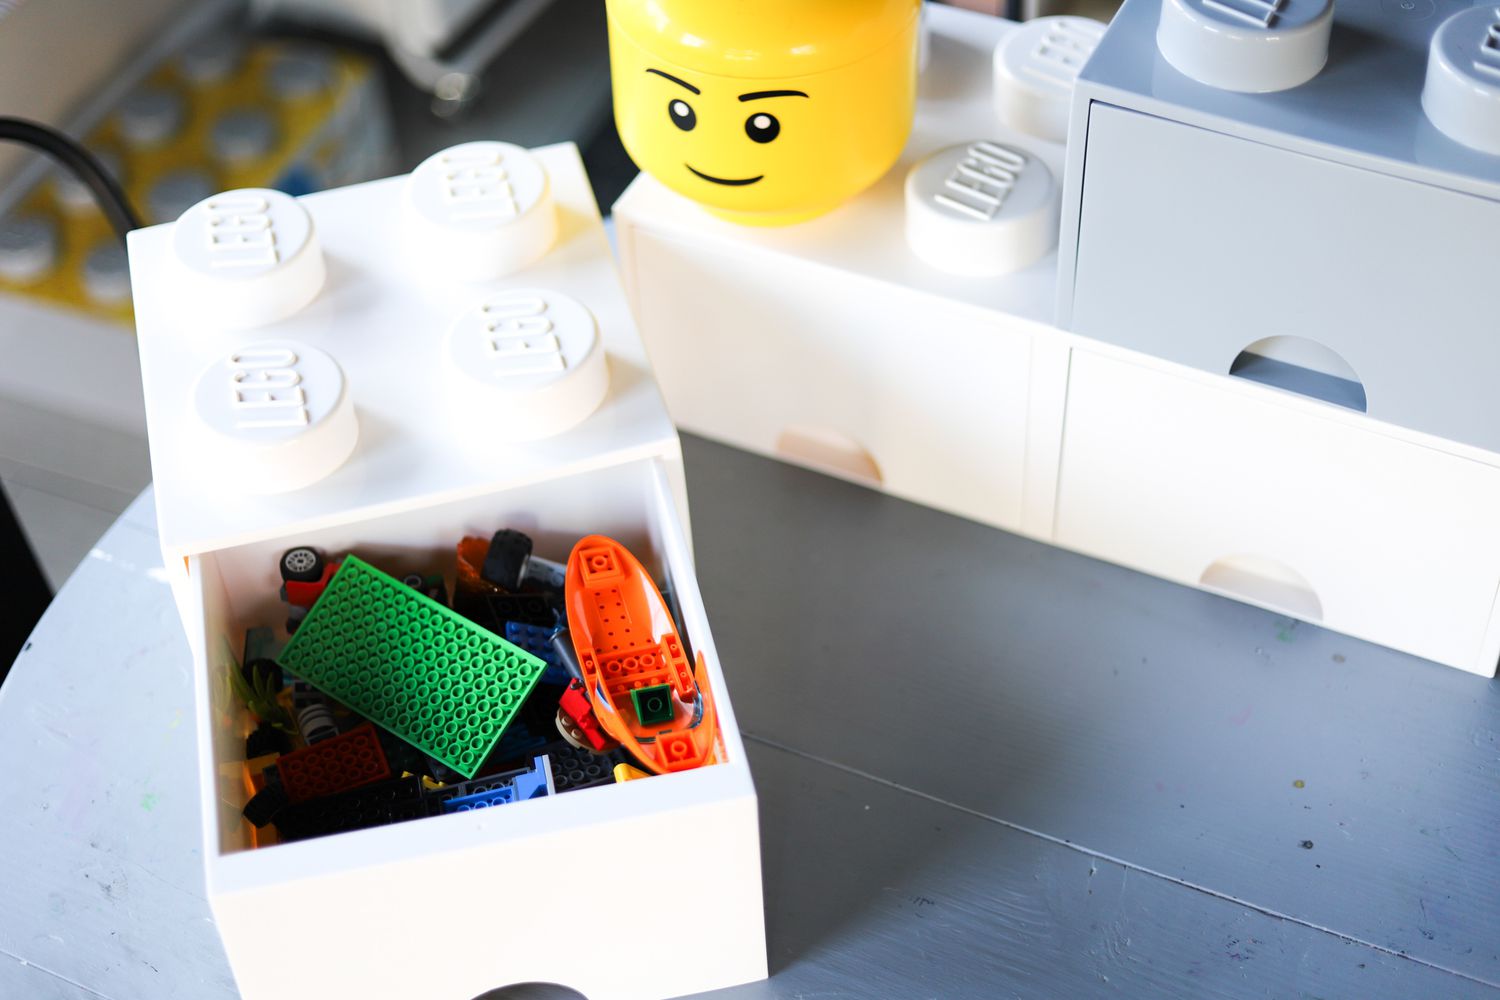 Lego storage